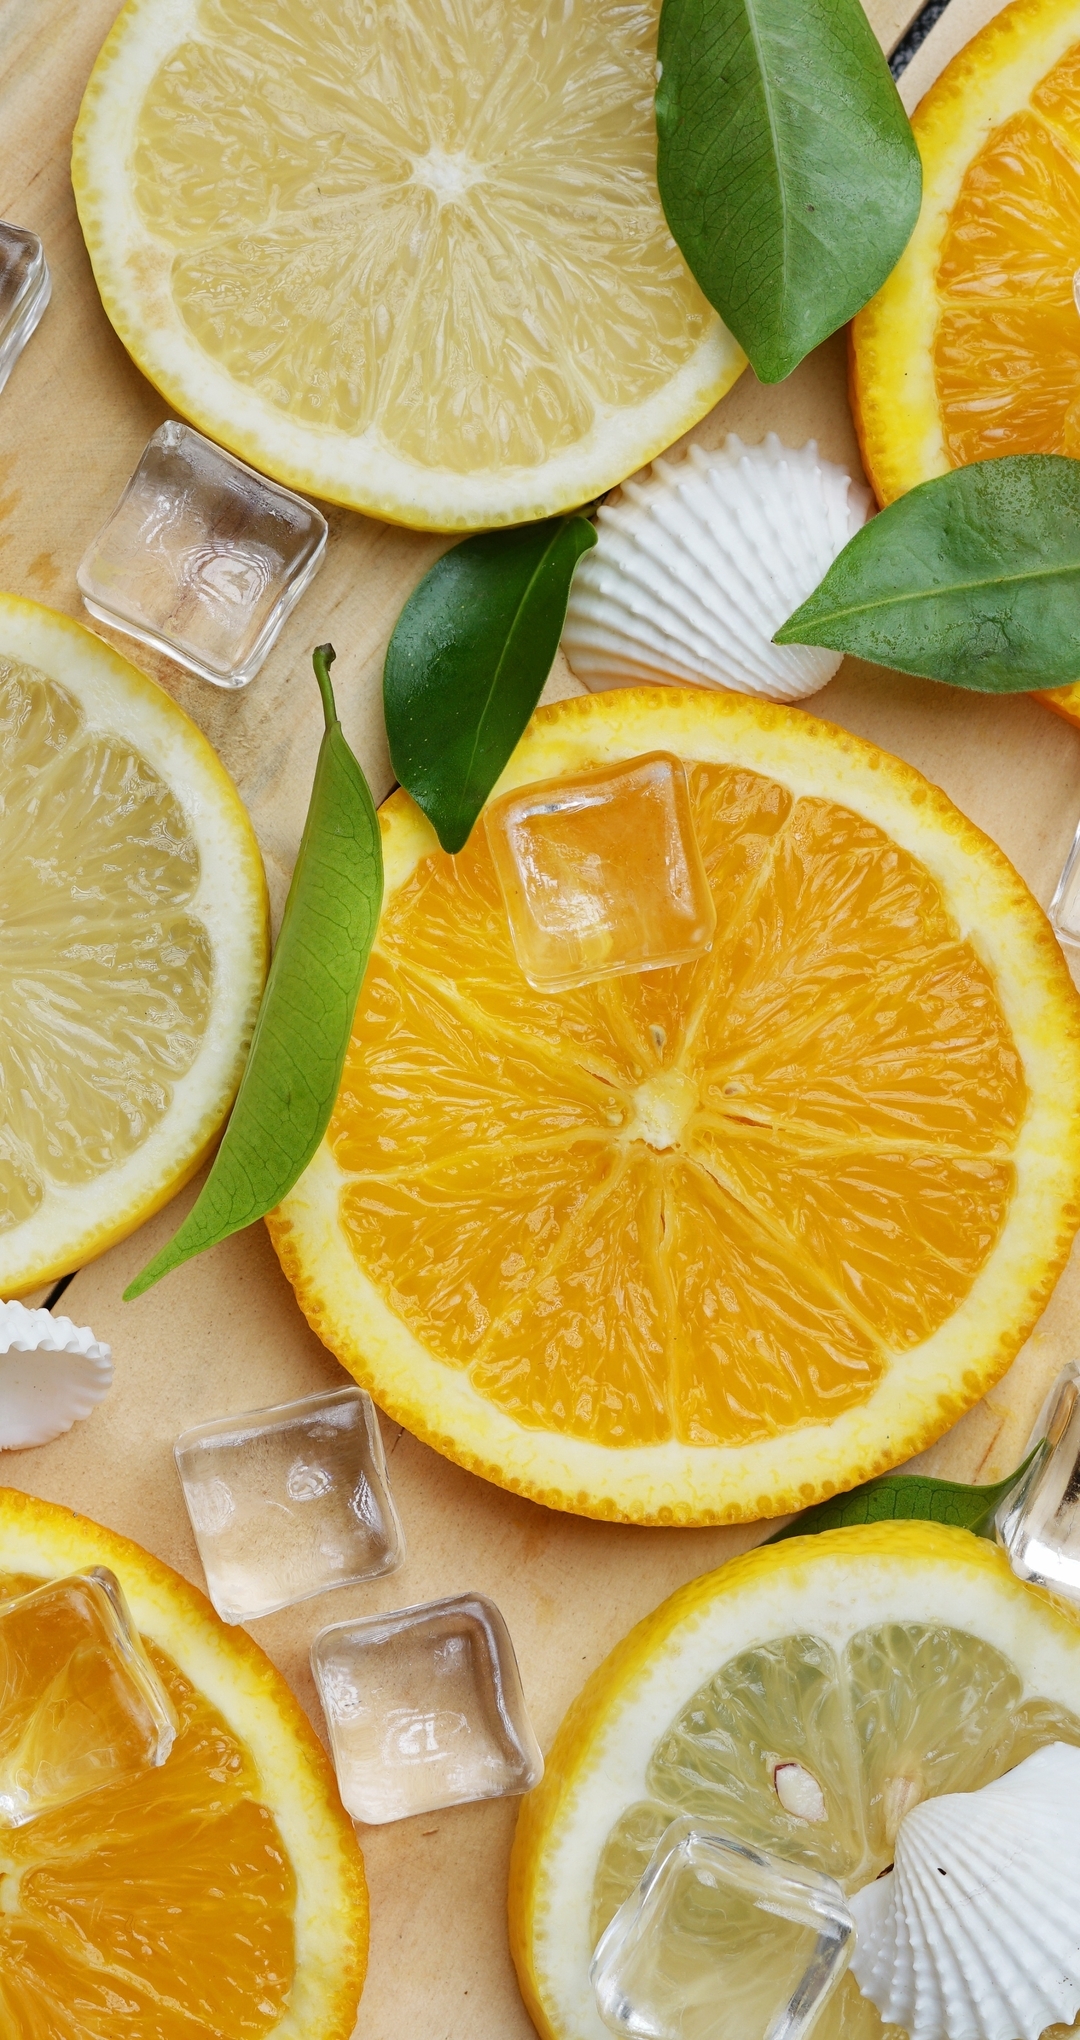 Image: Lemon, orange, slices, ice, shells